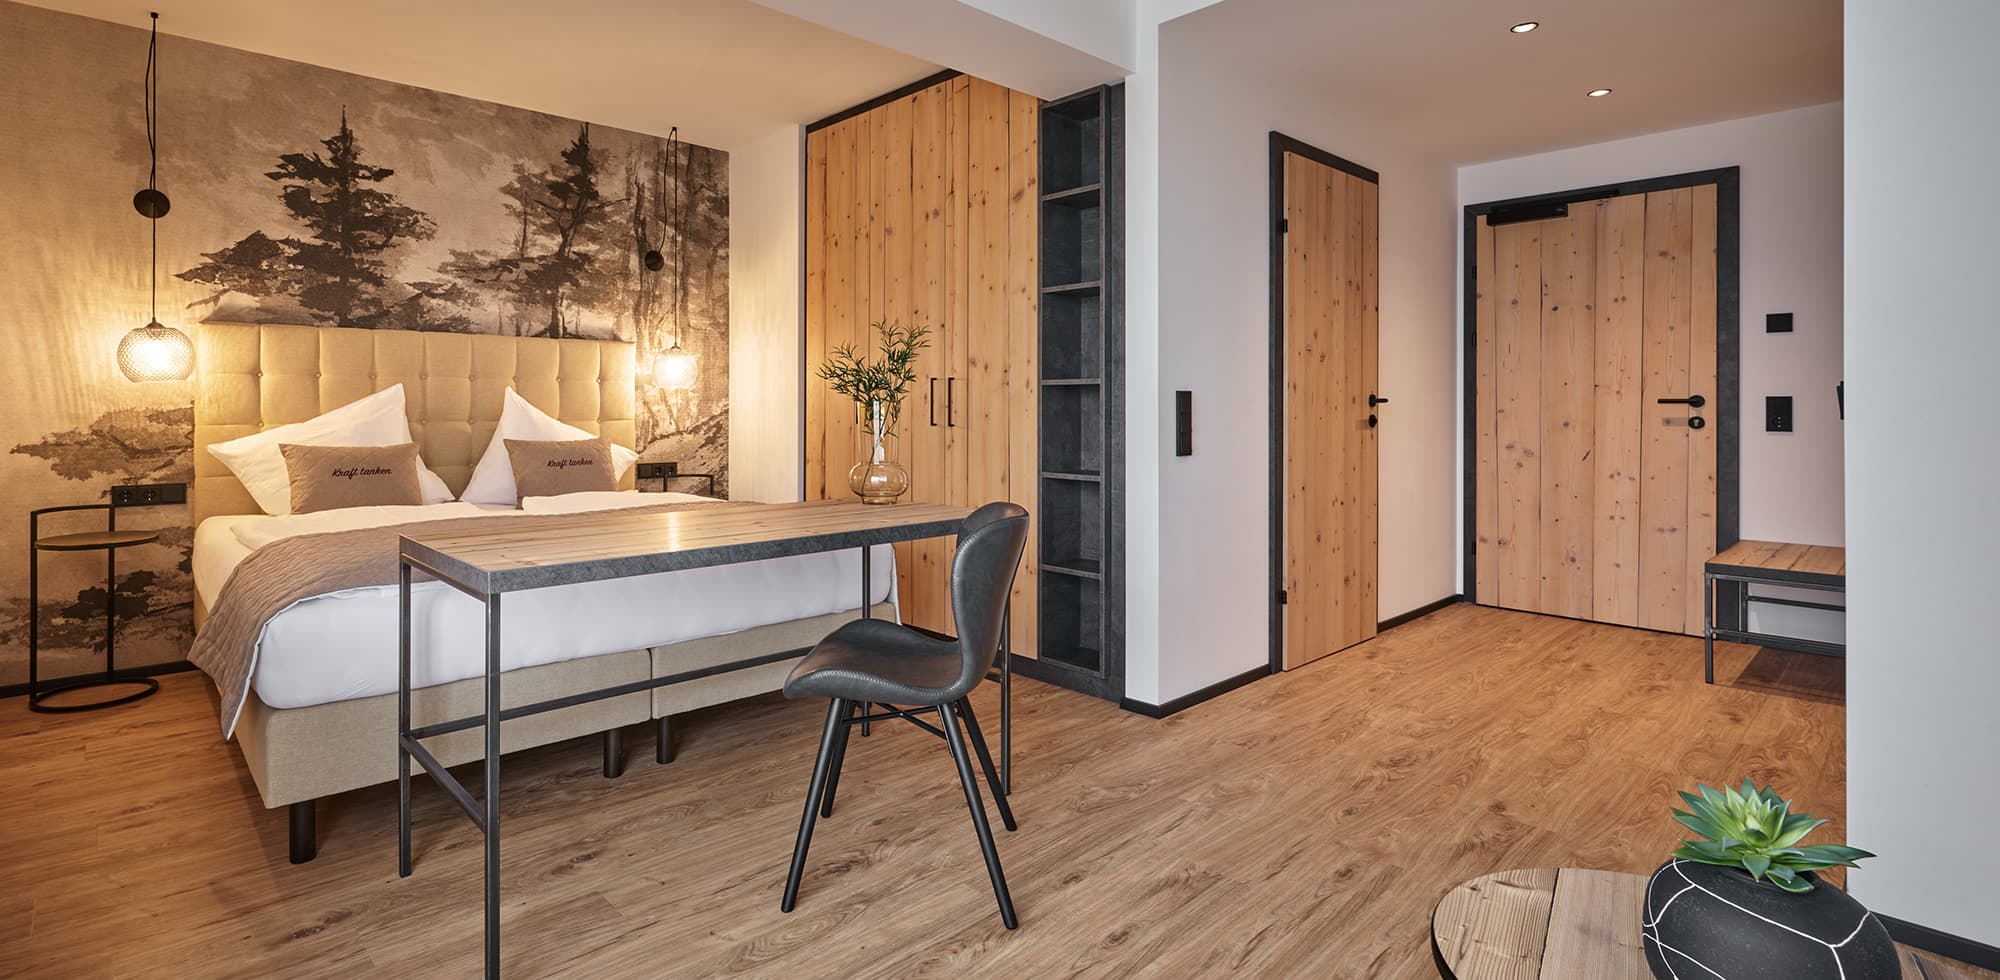 Doppelzimmer Sternenhimmel deluxe mit Talblick im Hotel Stern im Alpendorf in traumhafter Panoramalage